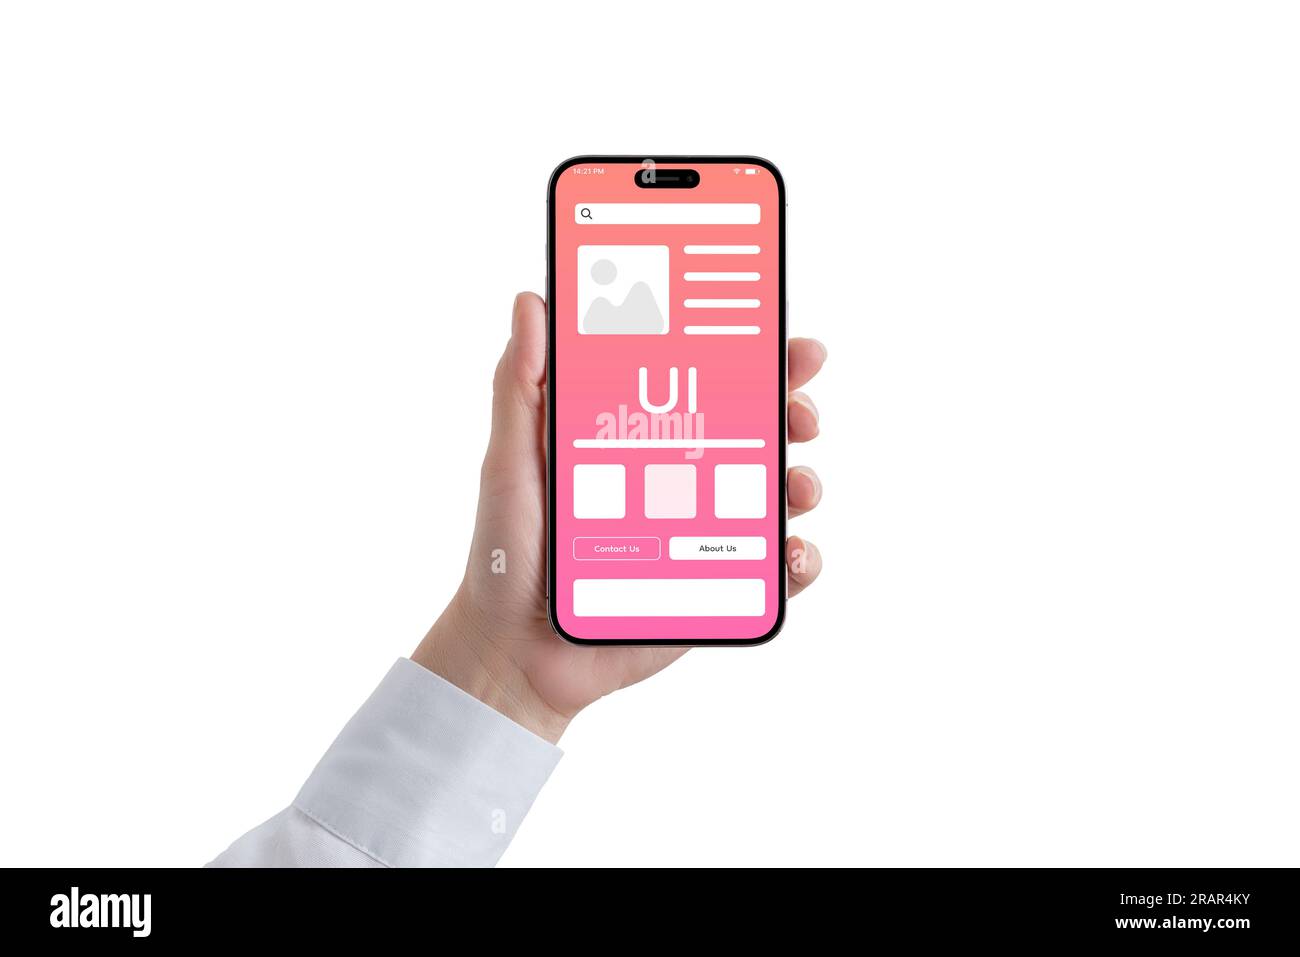 Frauenhand hält ein Telefon mit einer konzeptionellen Benutzeroberfläche. Die Oberfläche zeigt ein modernes Design mit schlanken Elementen. Isolierte Hand und Smartphone an Stockfoto